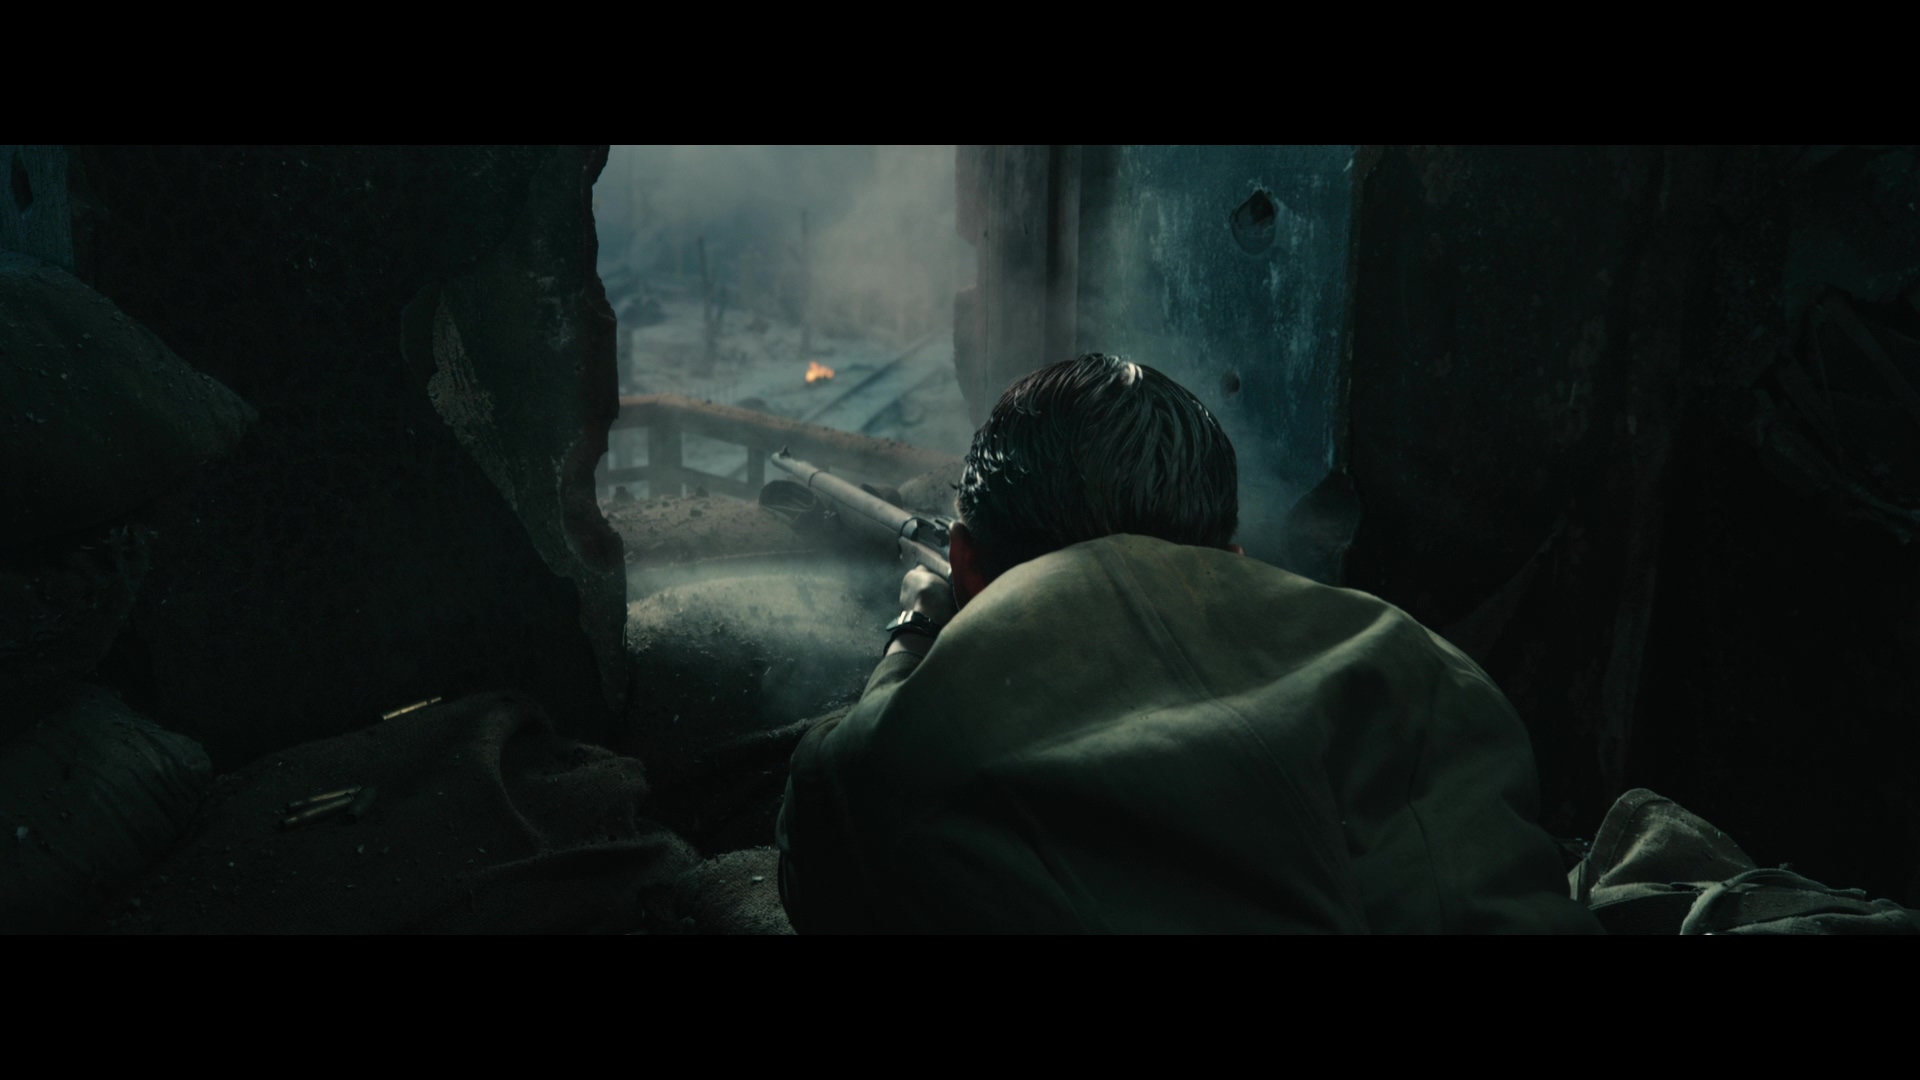 [斯大林格勒保卫战].Stalingrad.2013.TW.3D.BluRay.1080p.AVC.DTS-HD.MA.5.1-TTG   39.93G-13.jpg